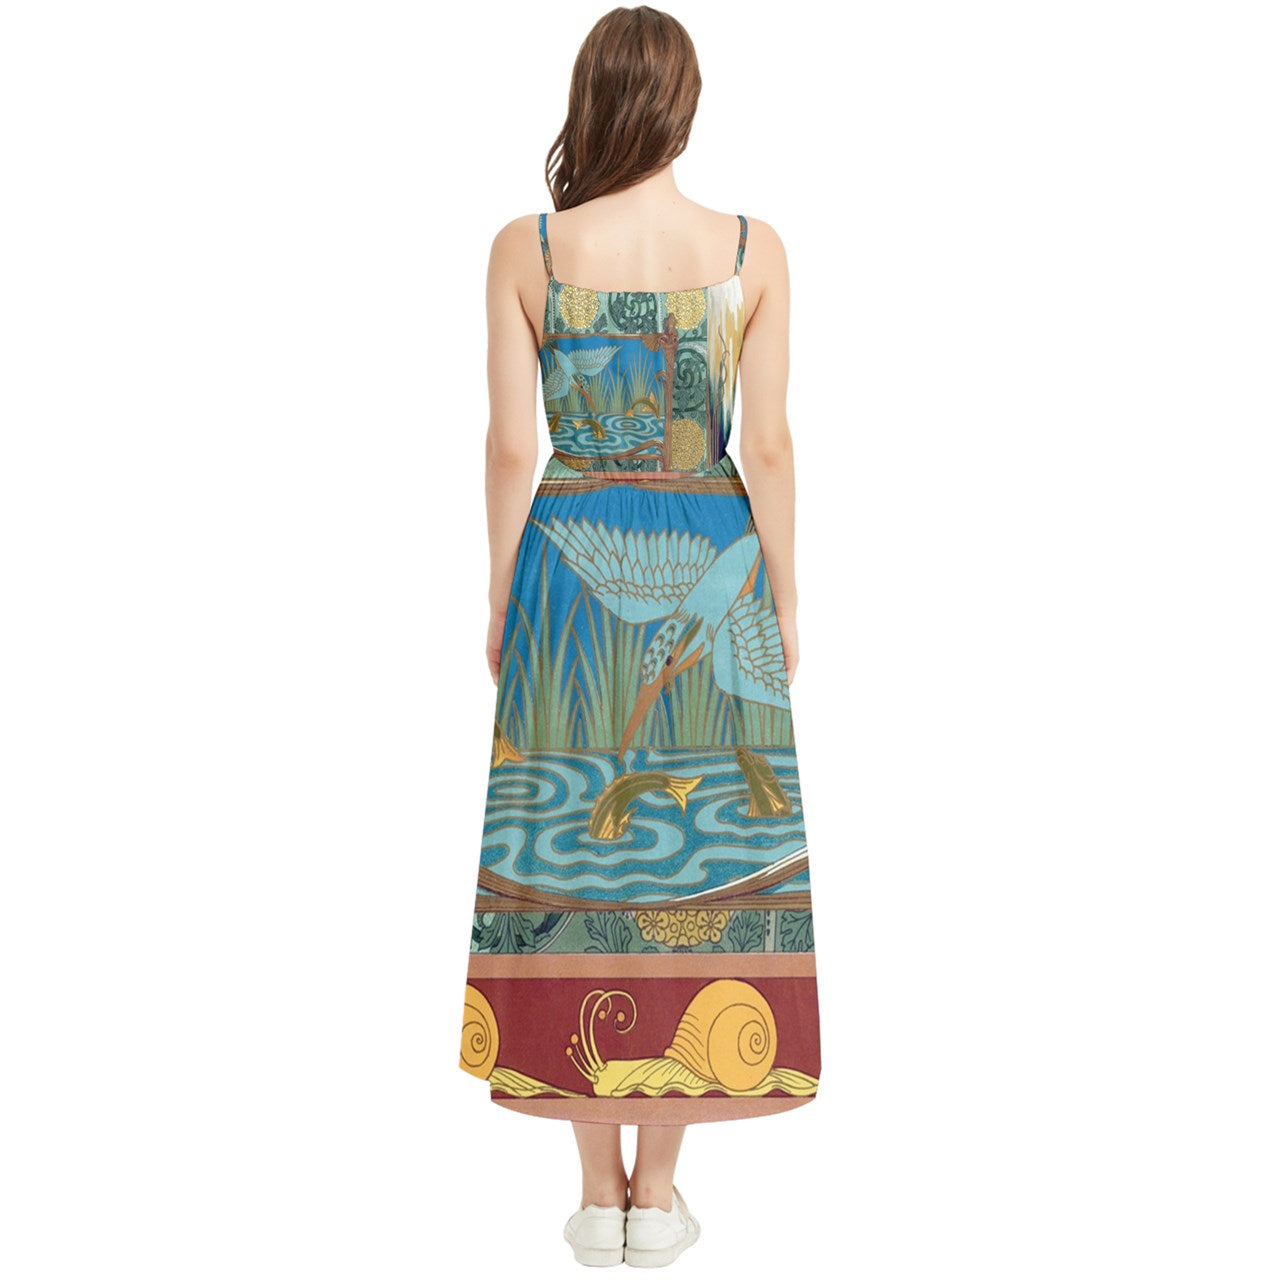 Boho Maxi Summer Dress Art Nouveau Inspired, 100% Polyester, Regular Fit